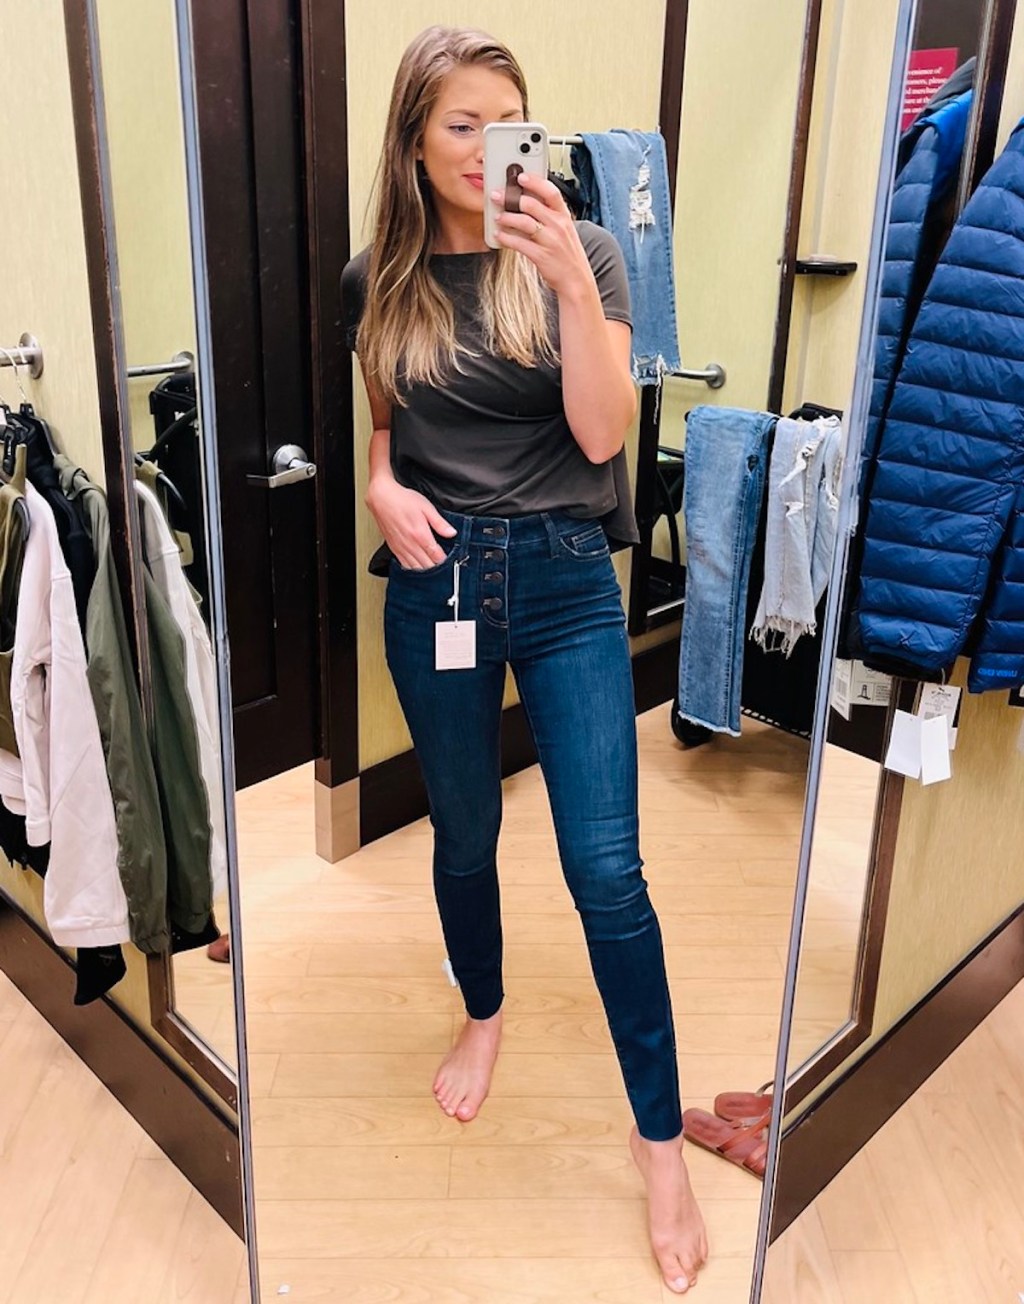 woman taking selfie in dressing room mirror